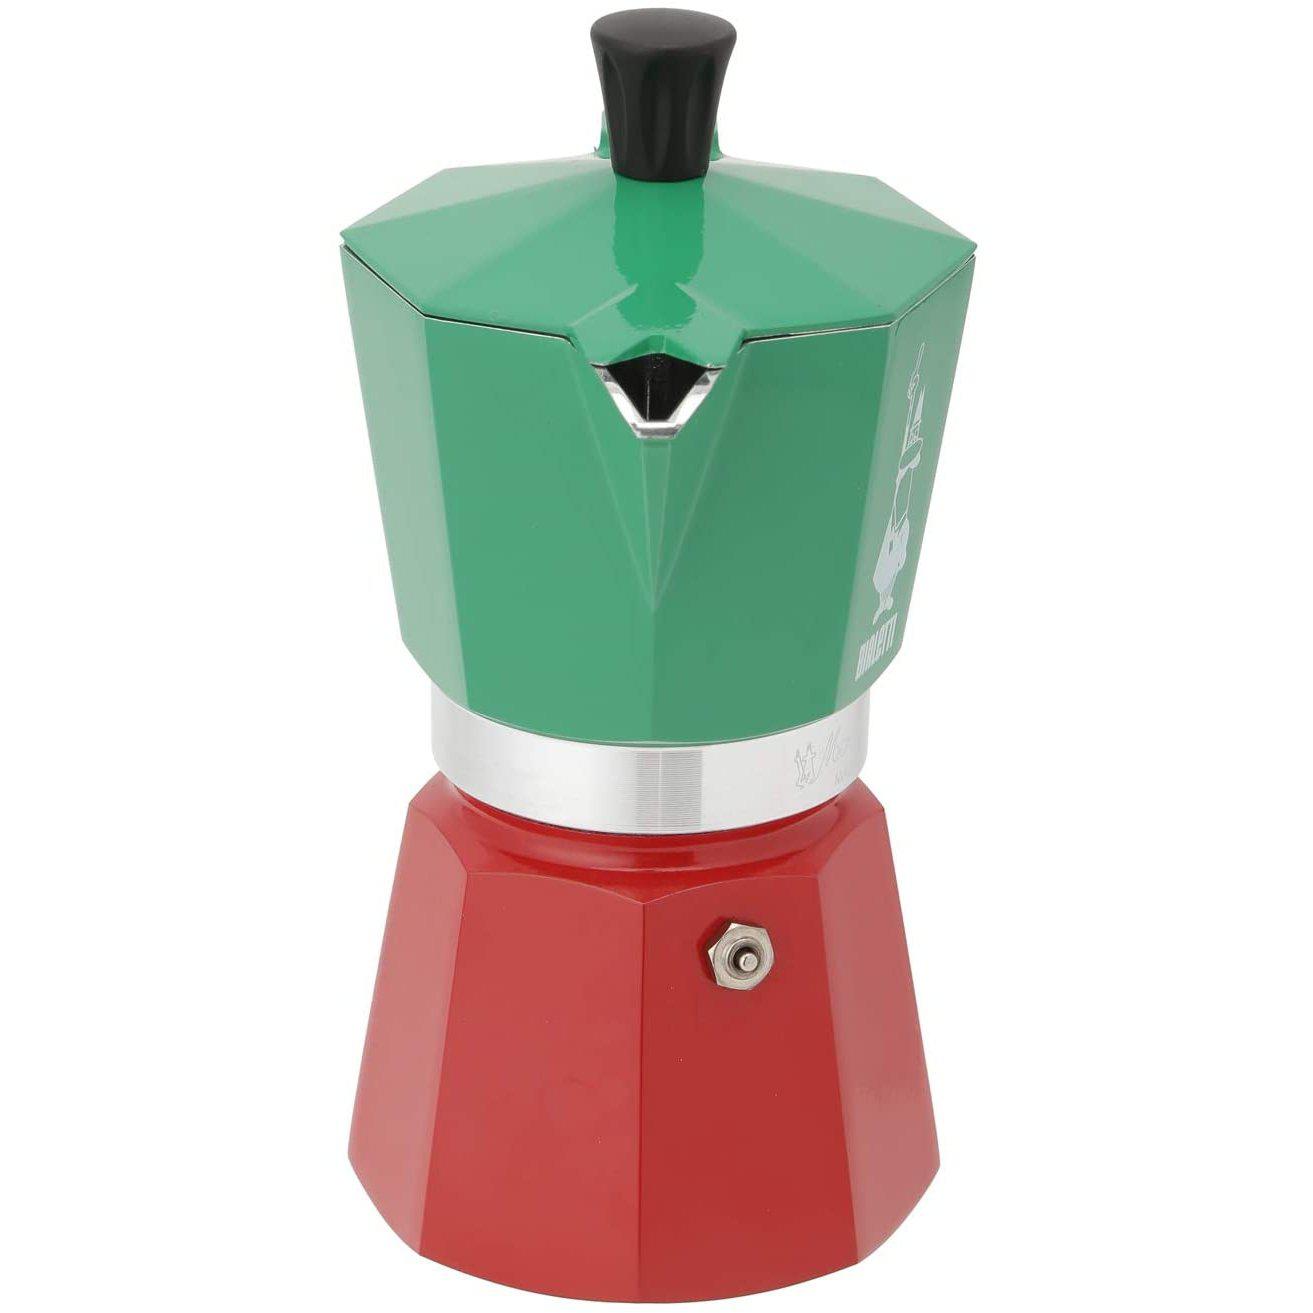 Bialetti 6 Cup Stovetop Espresso Maker Tricolour USA